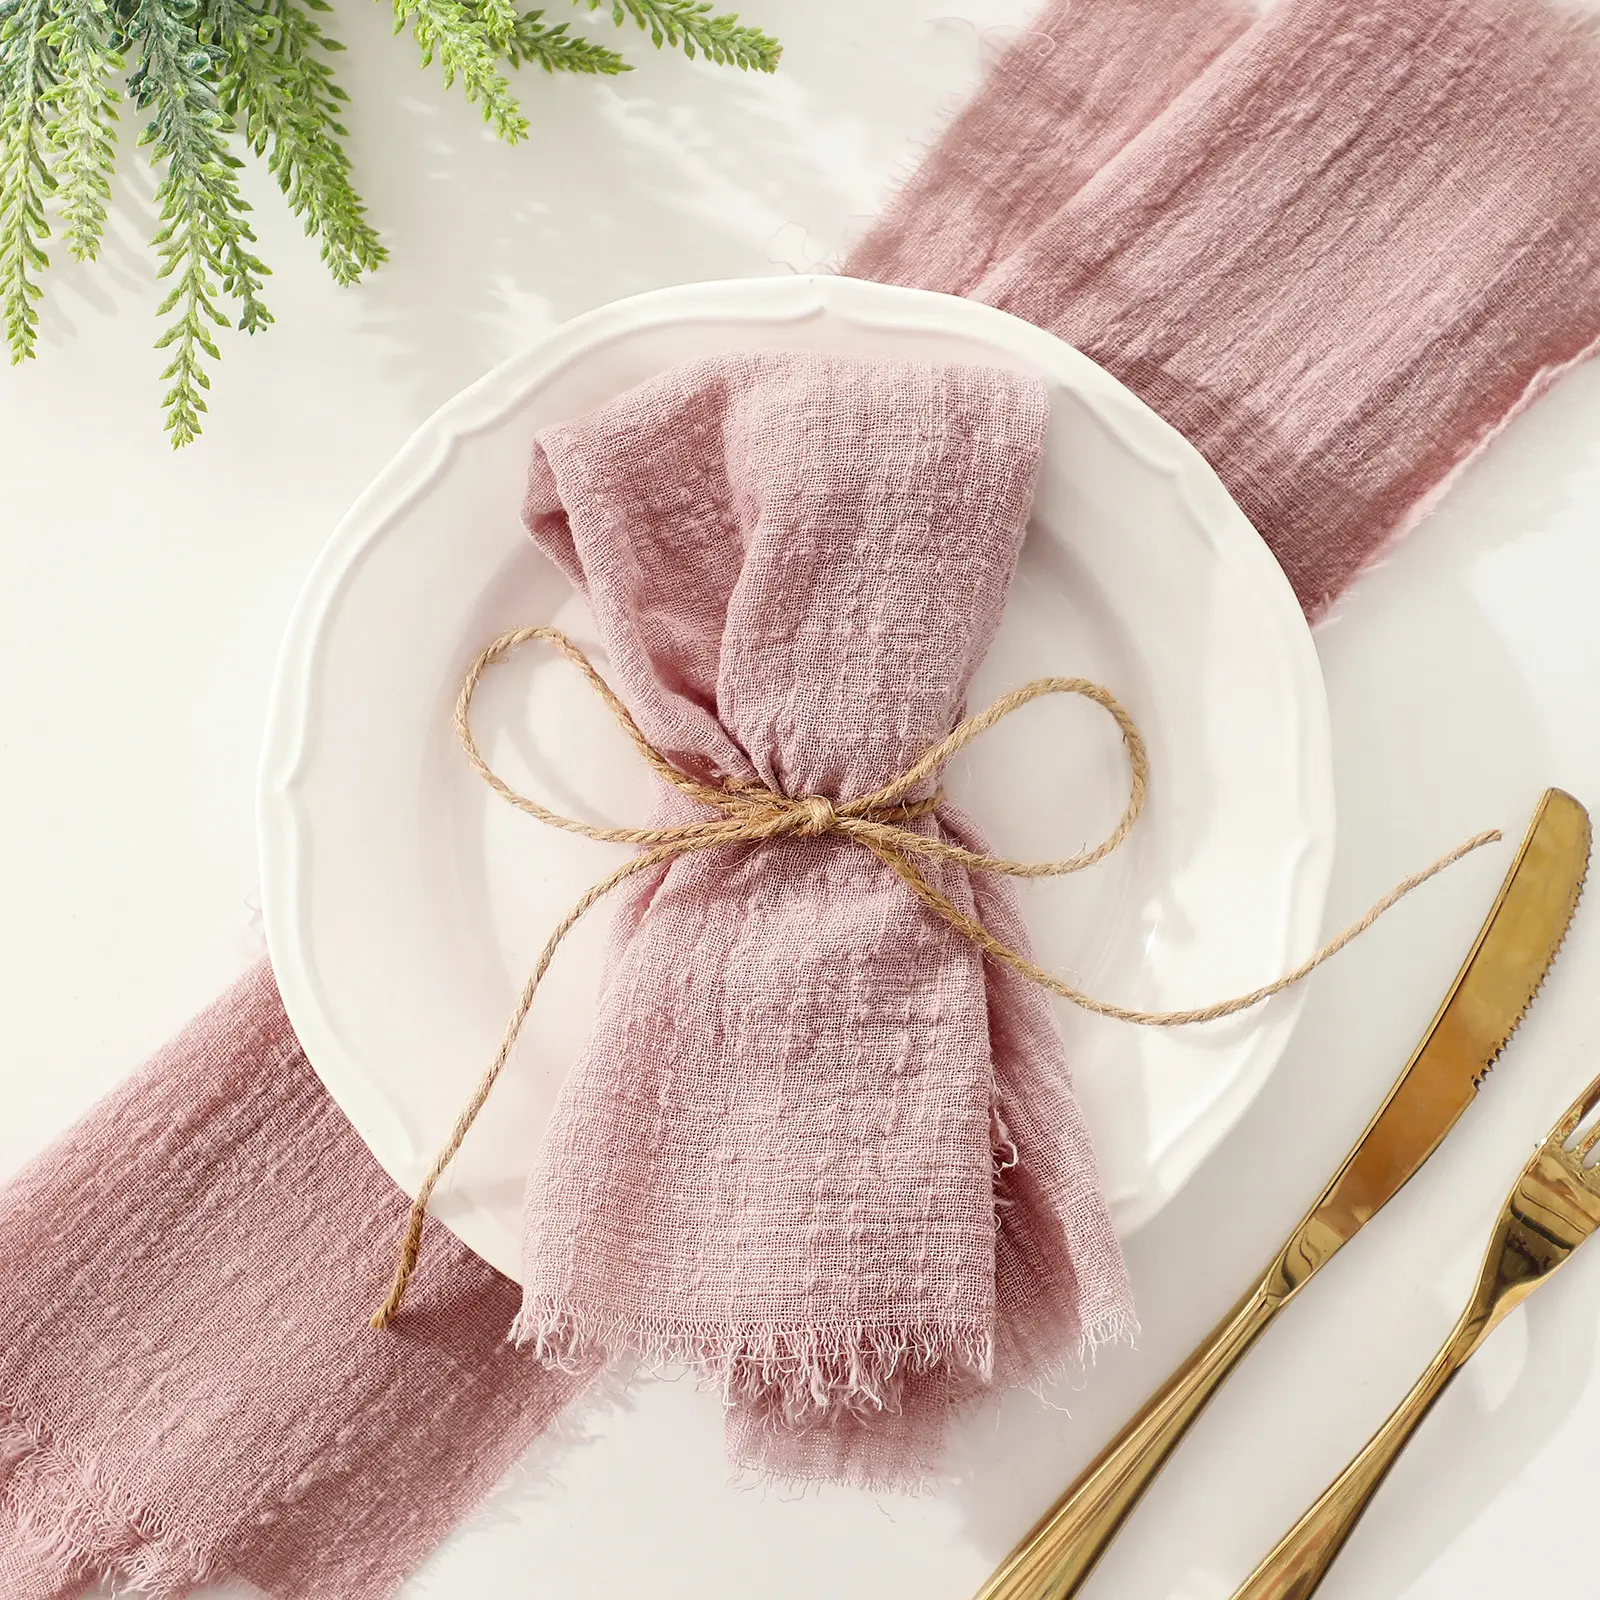 ディナーパーティーの結婚式のためのフリンジ繊細な手作りの布ナプキンと綿のテーブルクロスナプキン